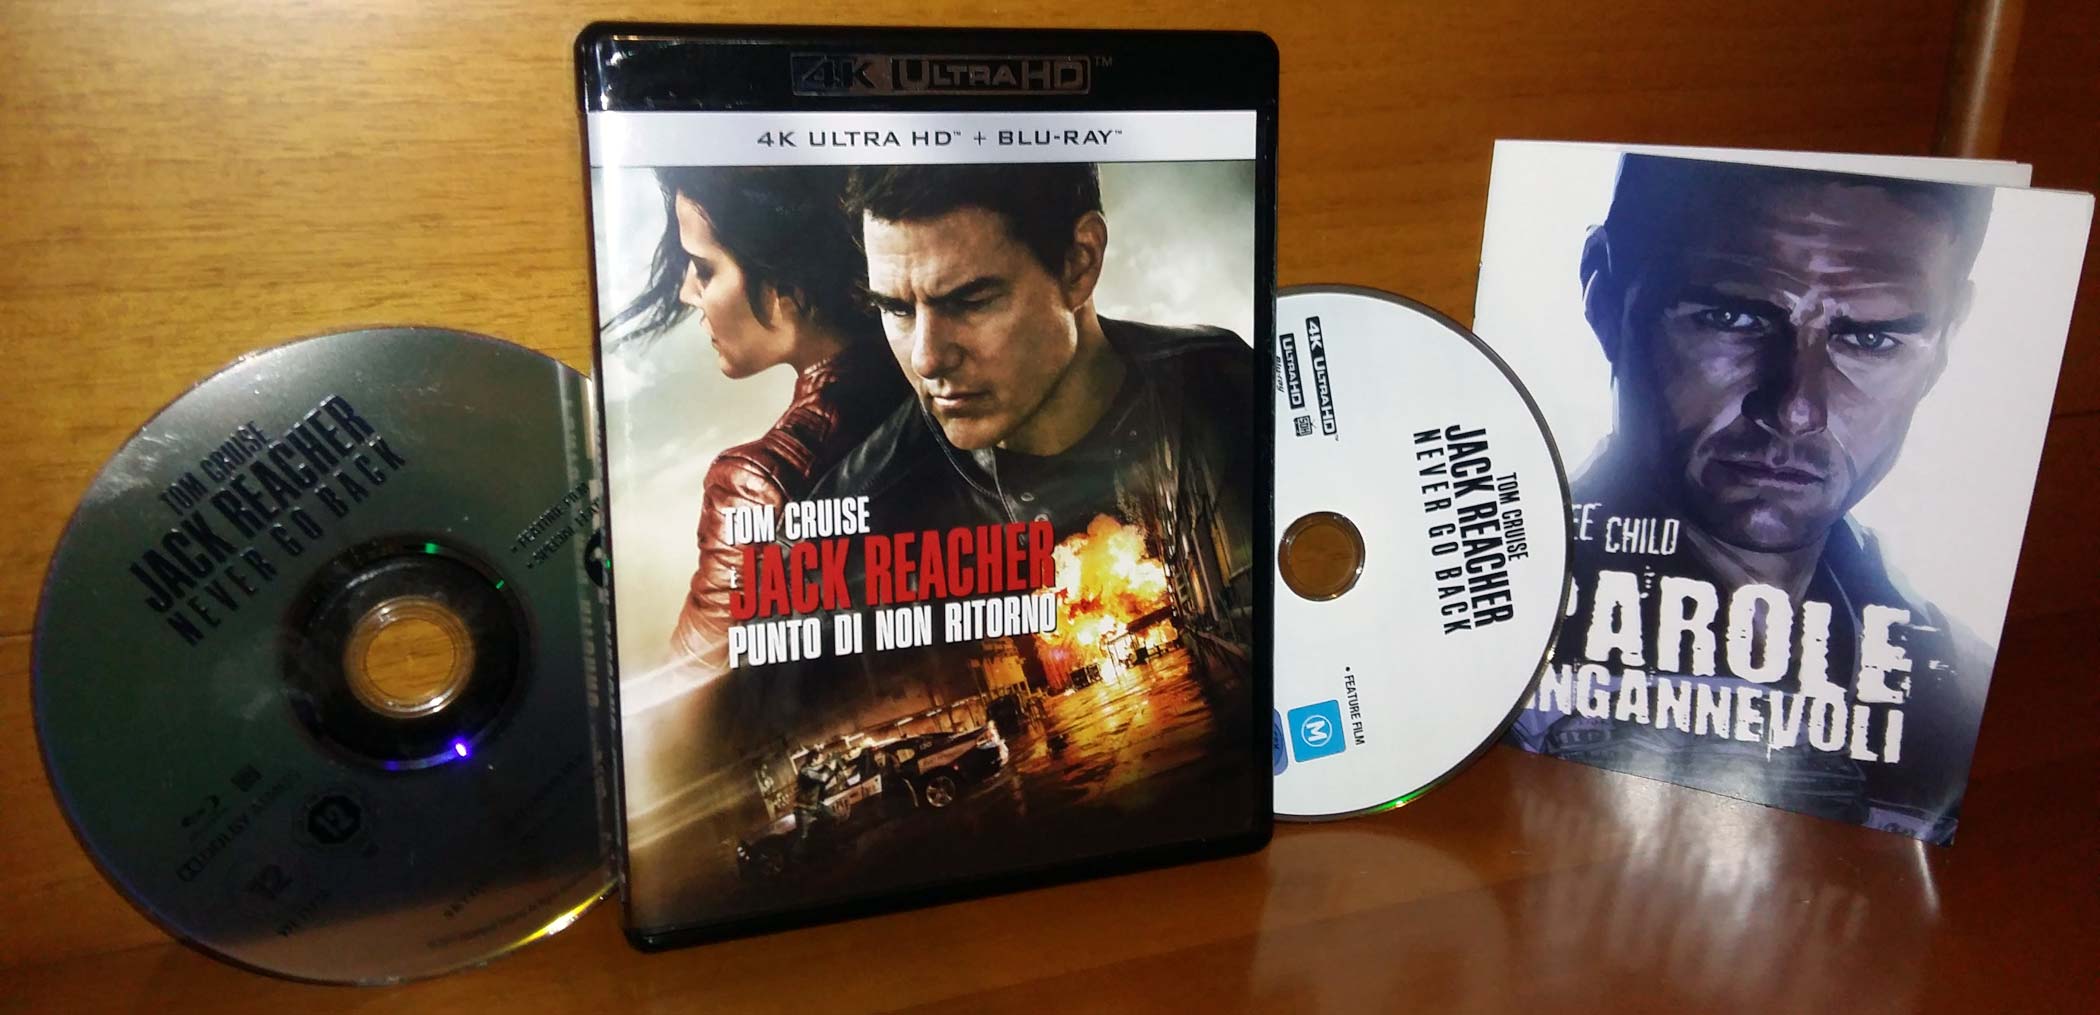 Jack Reacher - Punto di non ritorno, Blu-ray 4k UHD